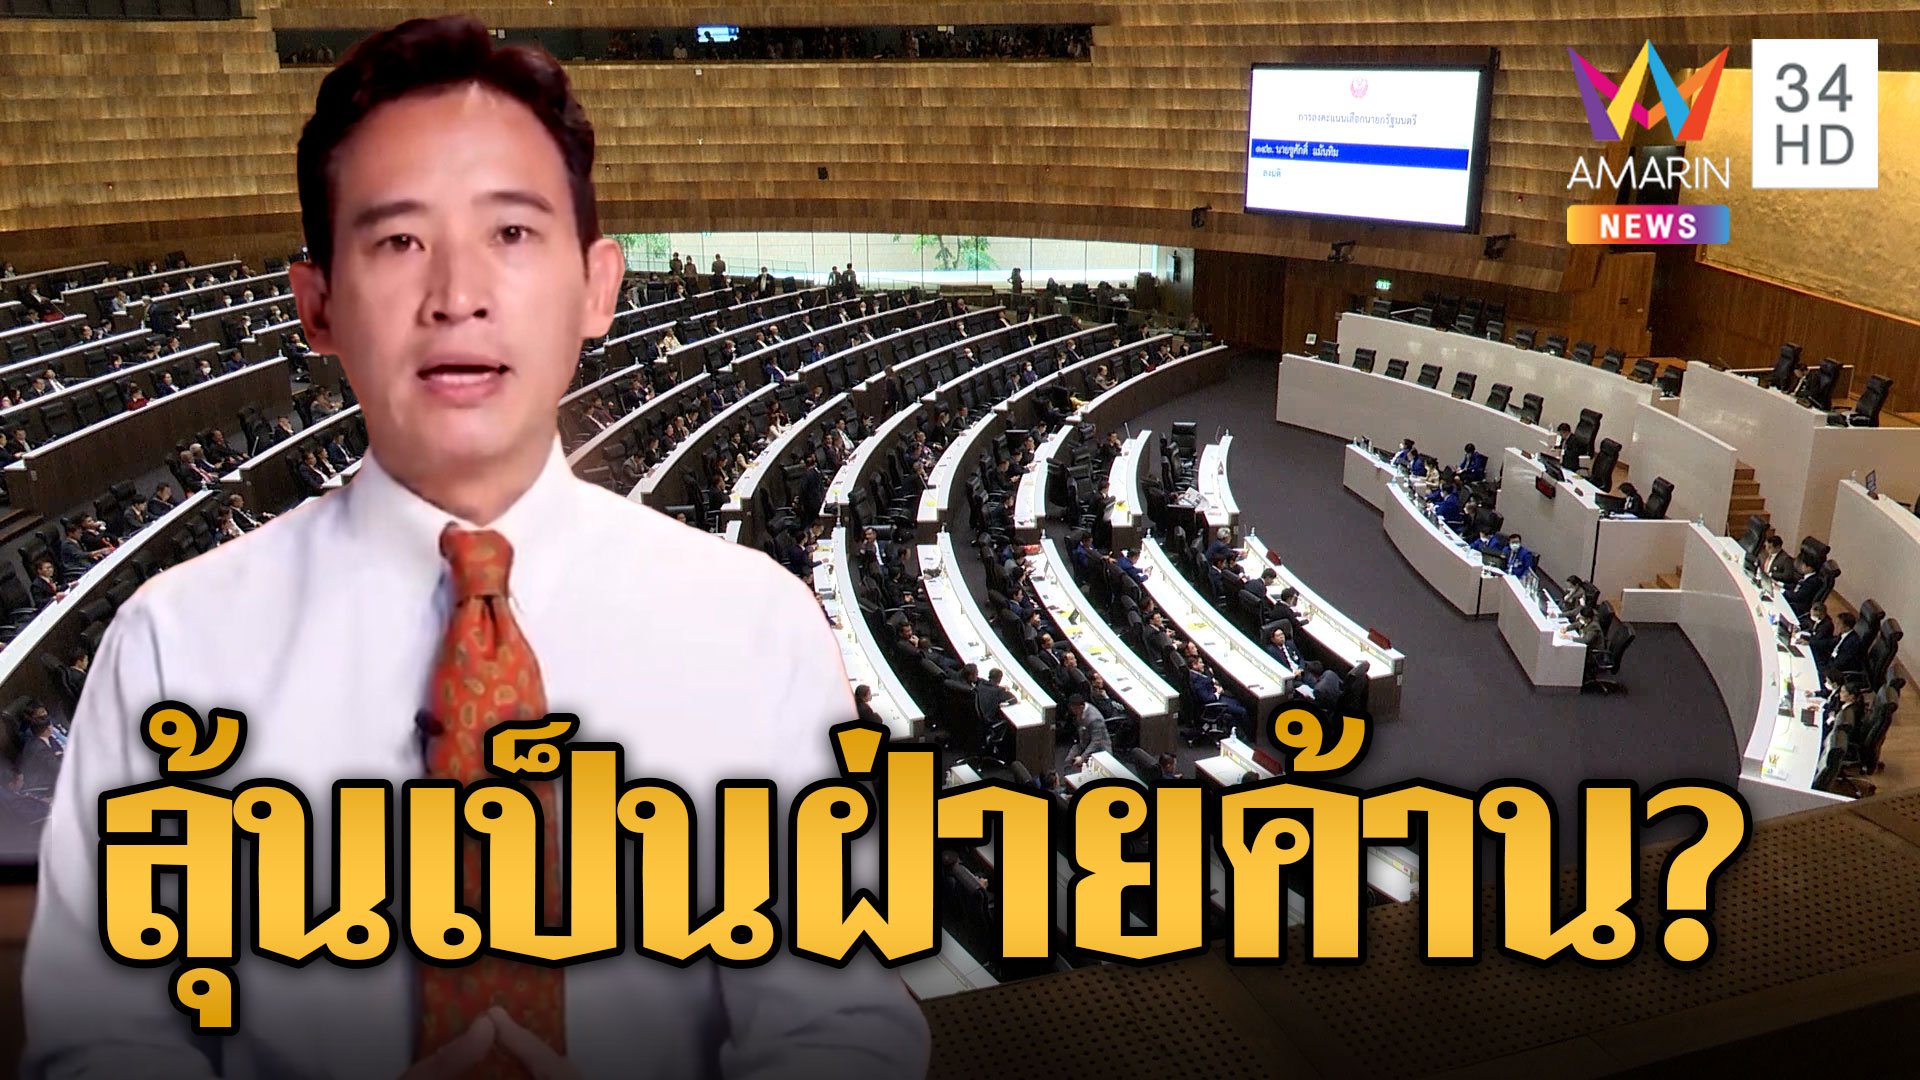 "พิธา" คอตกหนทางสู่นายกยากแล้ว เปิดทาง "เพื่อไทย" แกนนำตั้งรัฐบาล ลุ้นโดนถีบเป็นฝ่ายค้าน | ข่าวอรุณอมรินทร์ | 16 ก.ค. 66 | AMARIN TVHD34